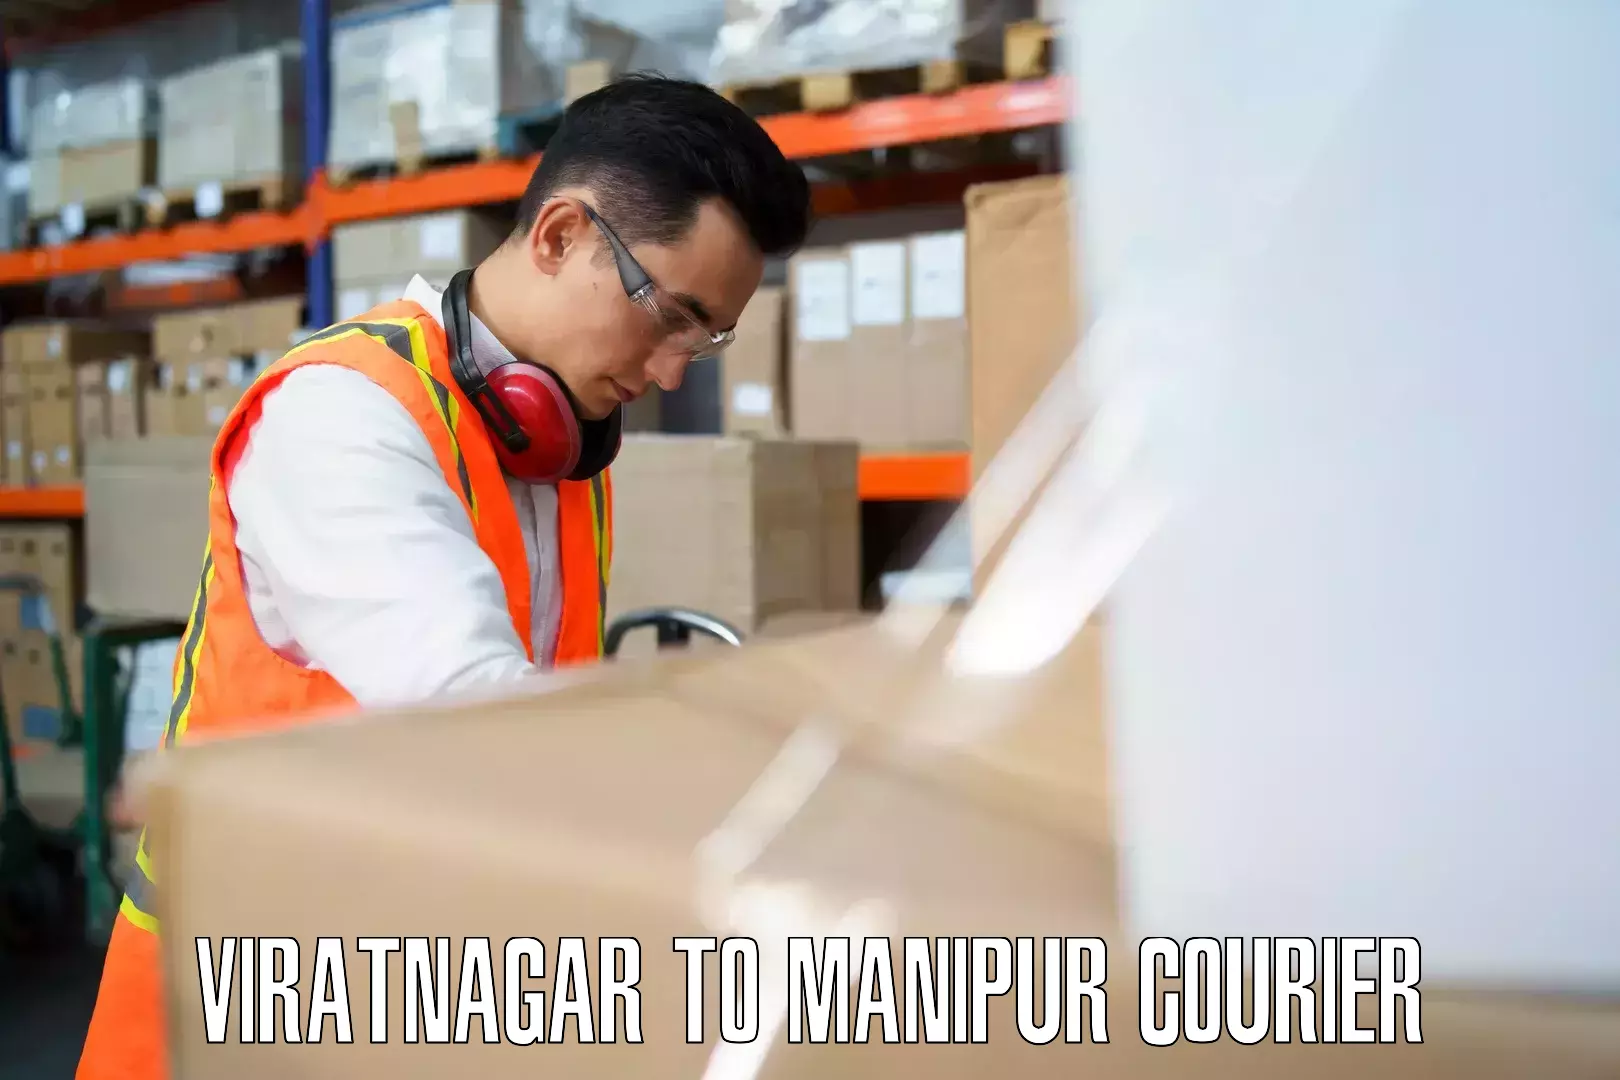 Baggage courier insights Viratnagar to Moirang